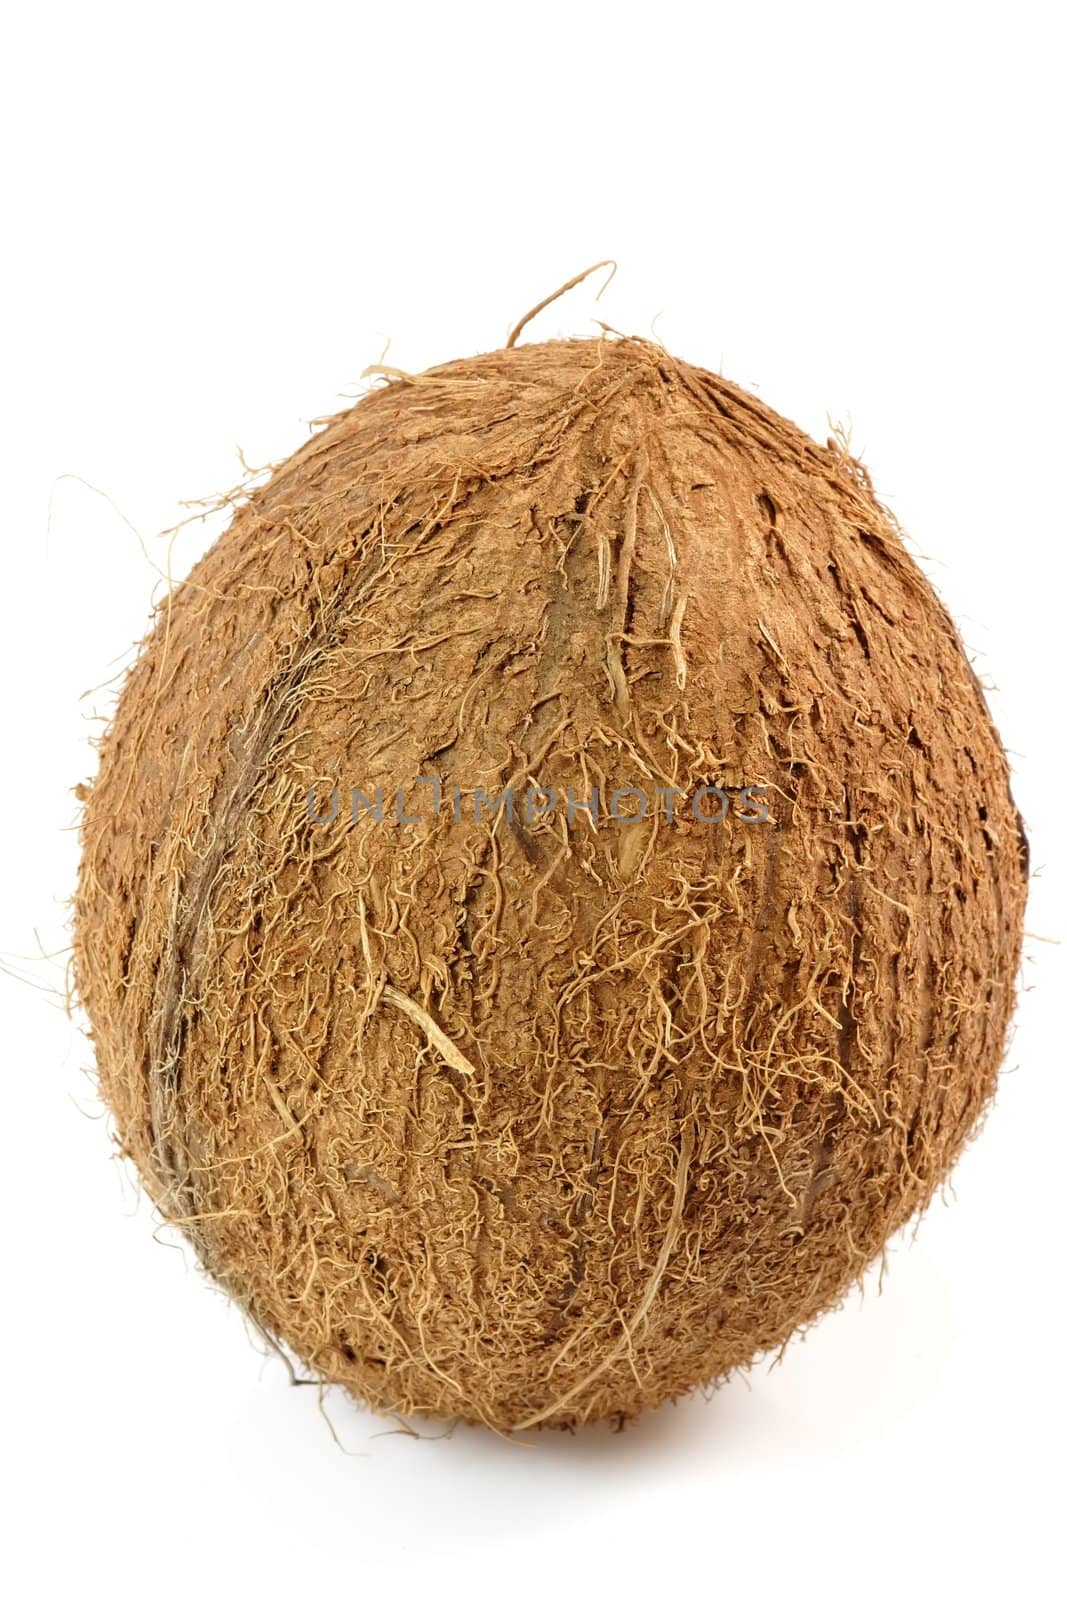 Fresh whole coconut - isolated on white background